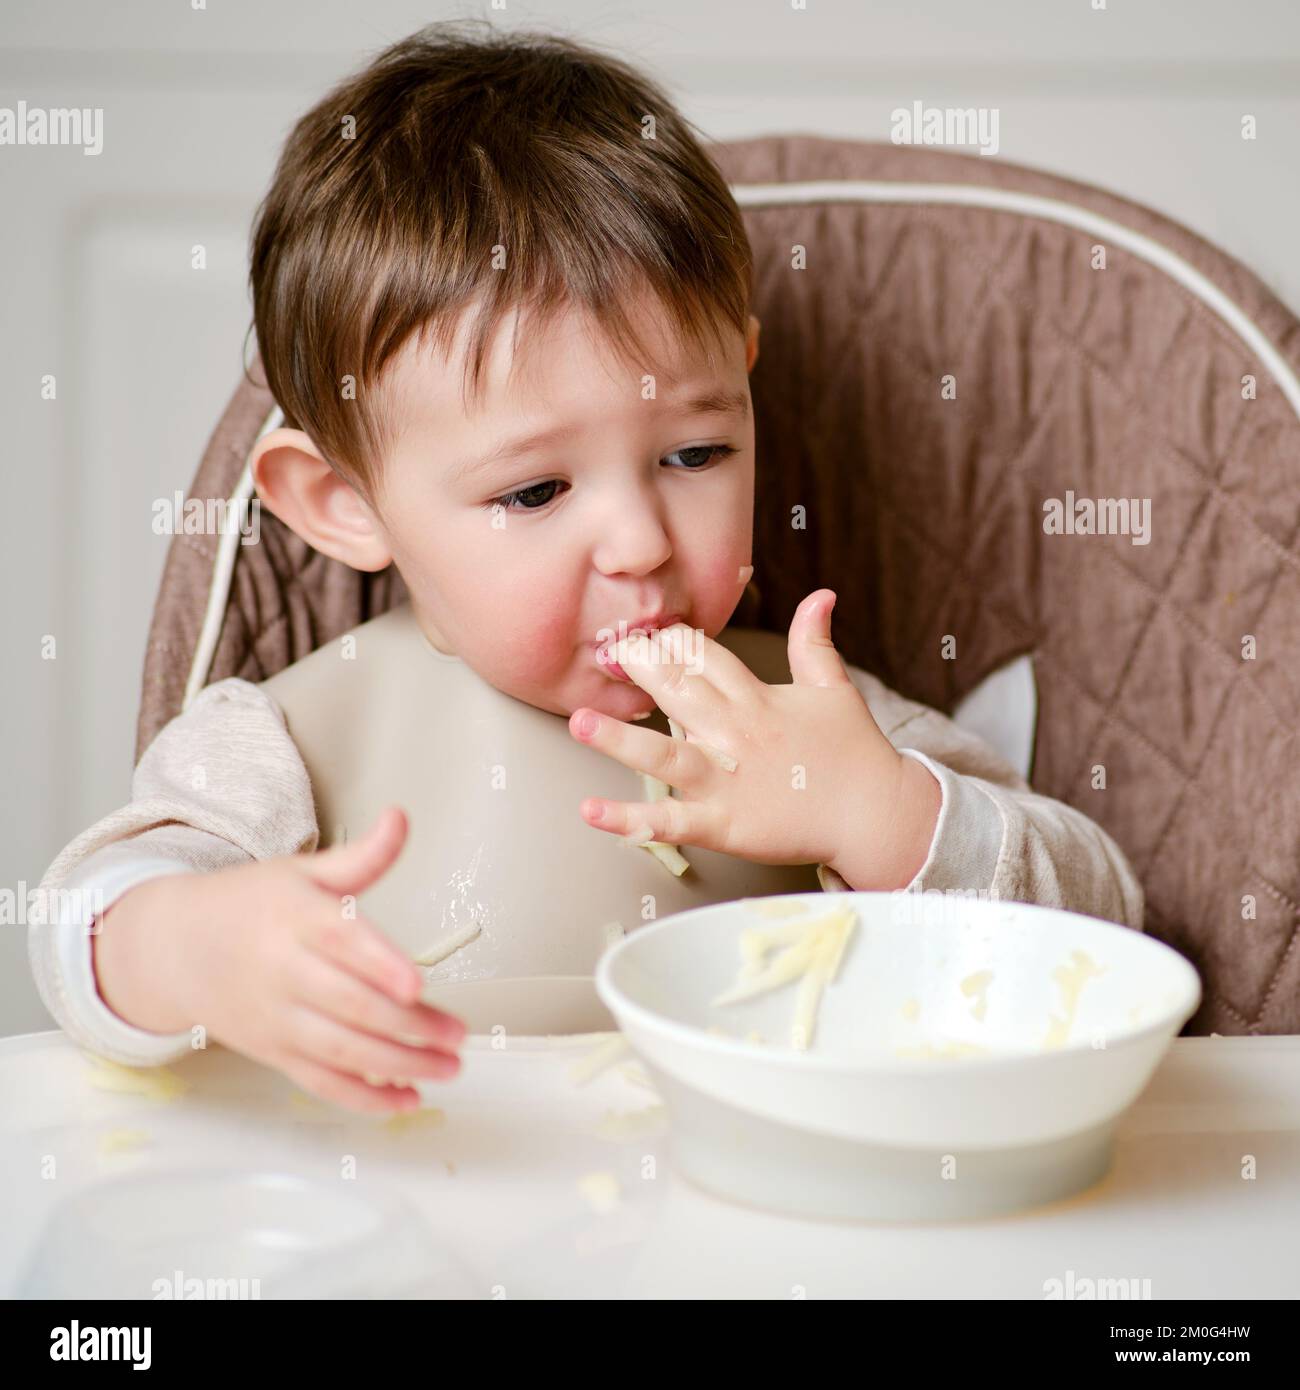 Un bambino divertente sta mangiando una mela grattugiata con la bocca piena  mentre si siede su una sedia da cucina. Il bambino affamato infila il cibo  in bocca, umorismo. Bambino di età